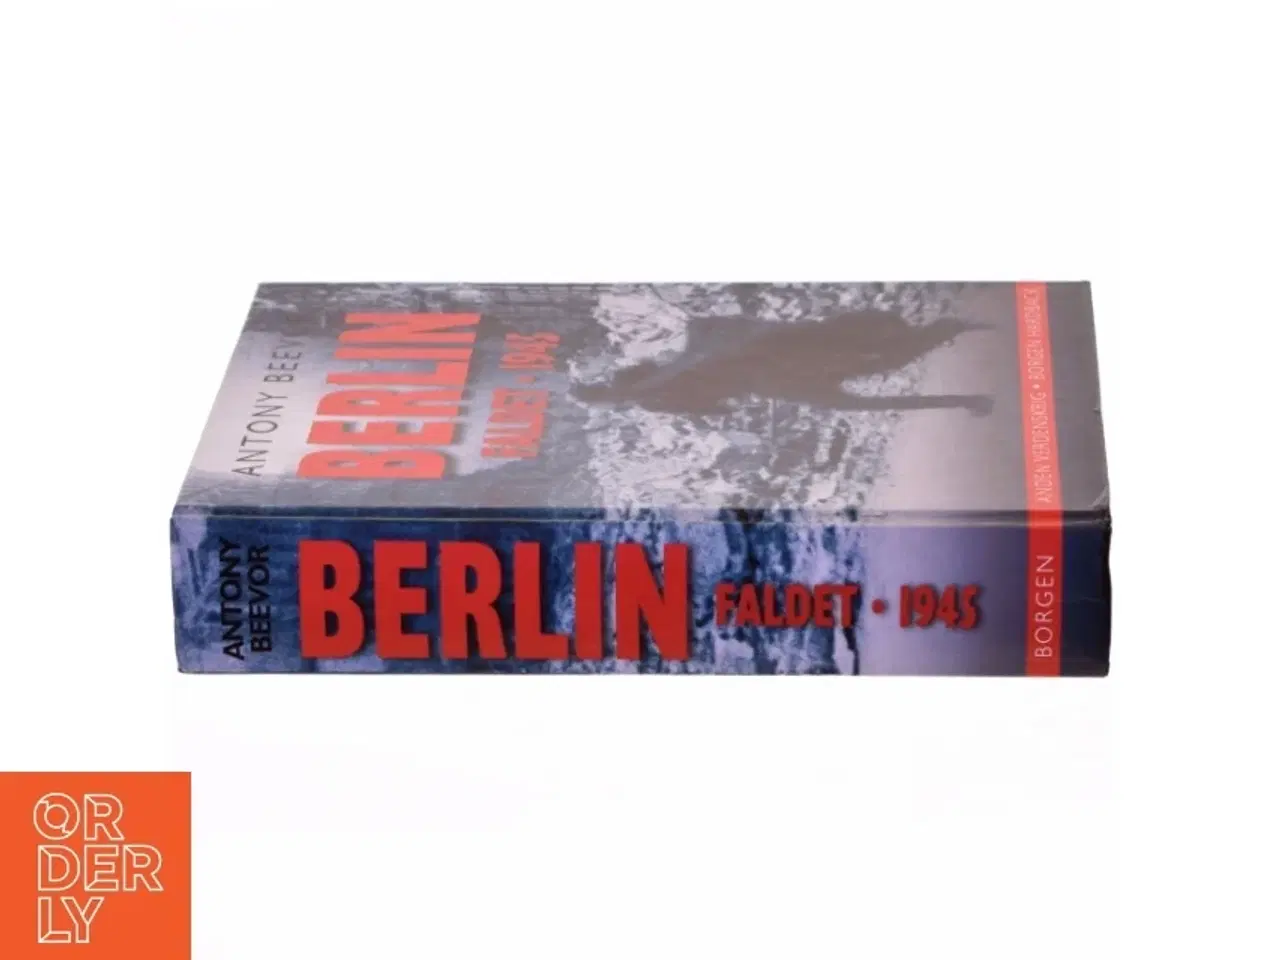 Billede 2 - Berlin : faldet, 1945 af Antony Beevor (Bog)